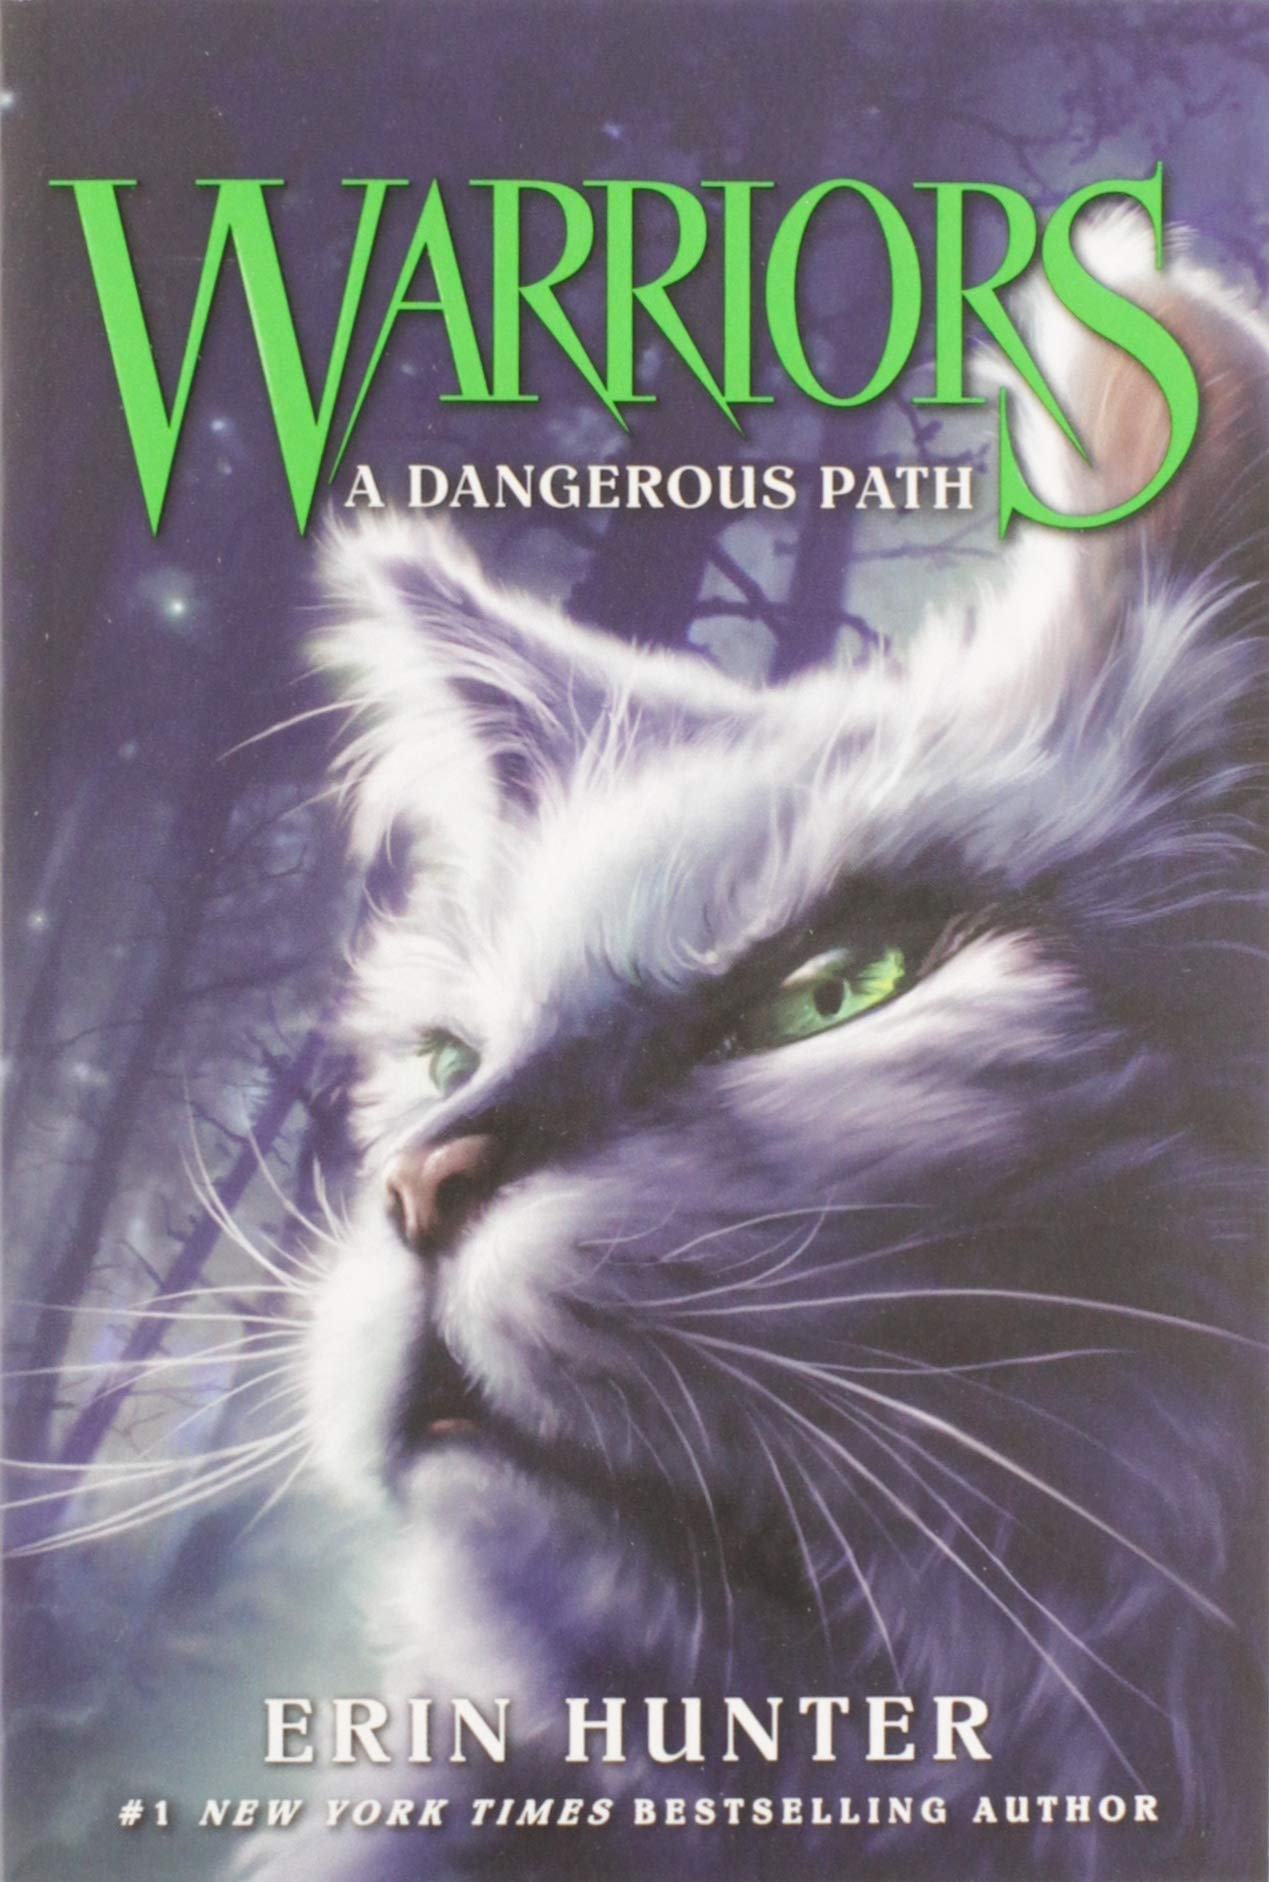 Warriors #1: Into the Wild (Warriors: The Prophecies Begin, 1